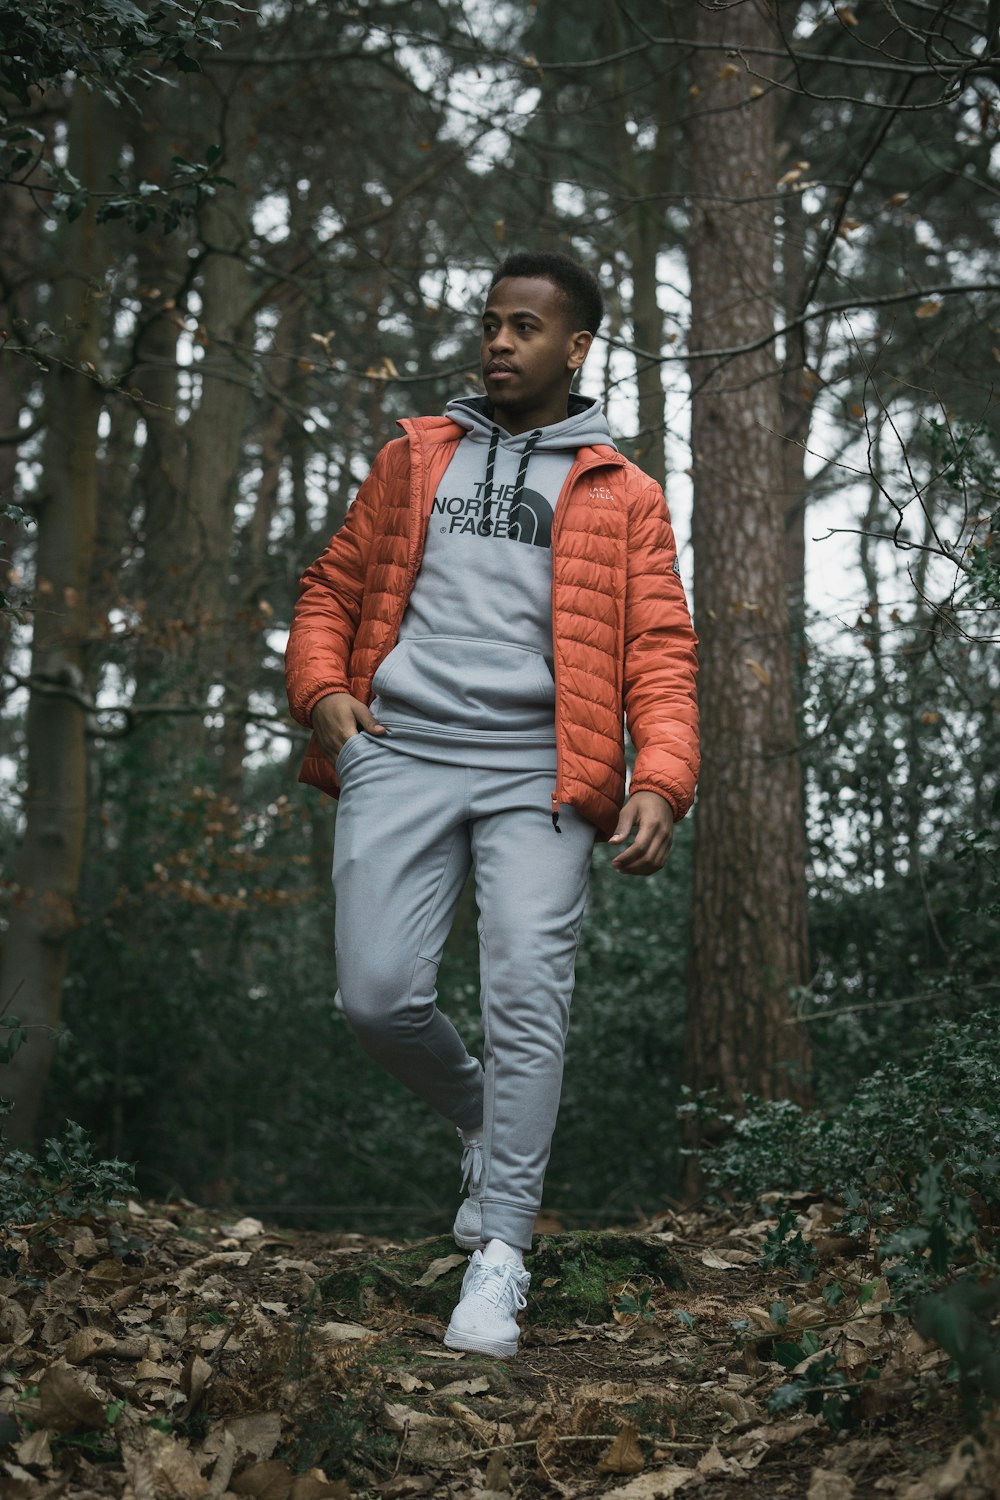 man in orange zip up jacket standing near trees during daytime